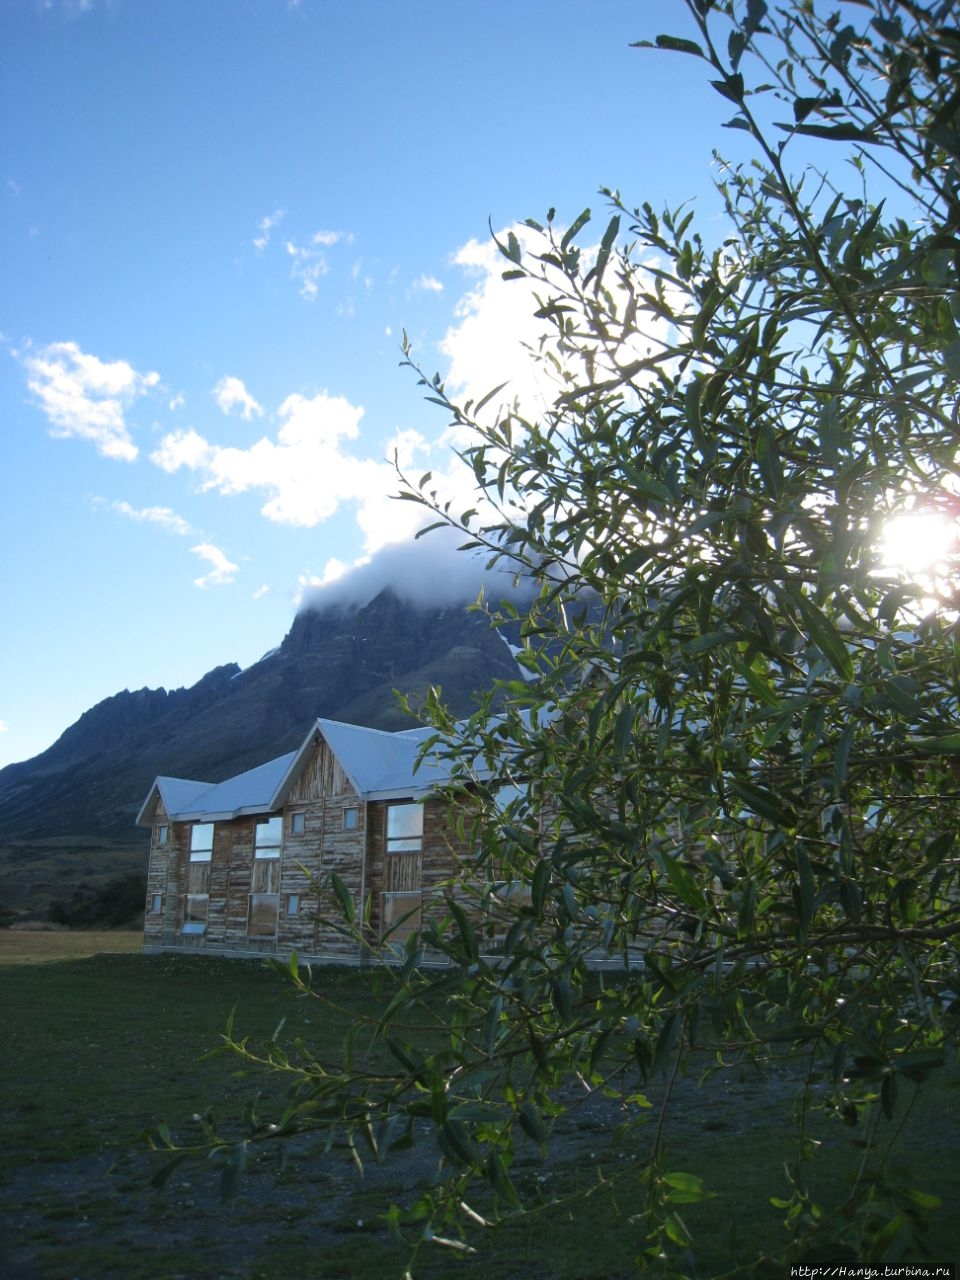 отель Las Torres Patagonia Национальный парк Торрес-дель-Пайне, Чили